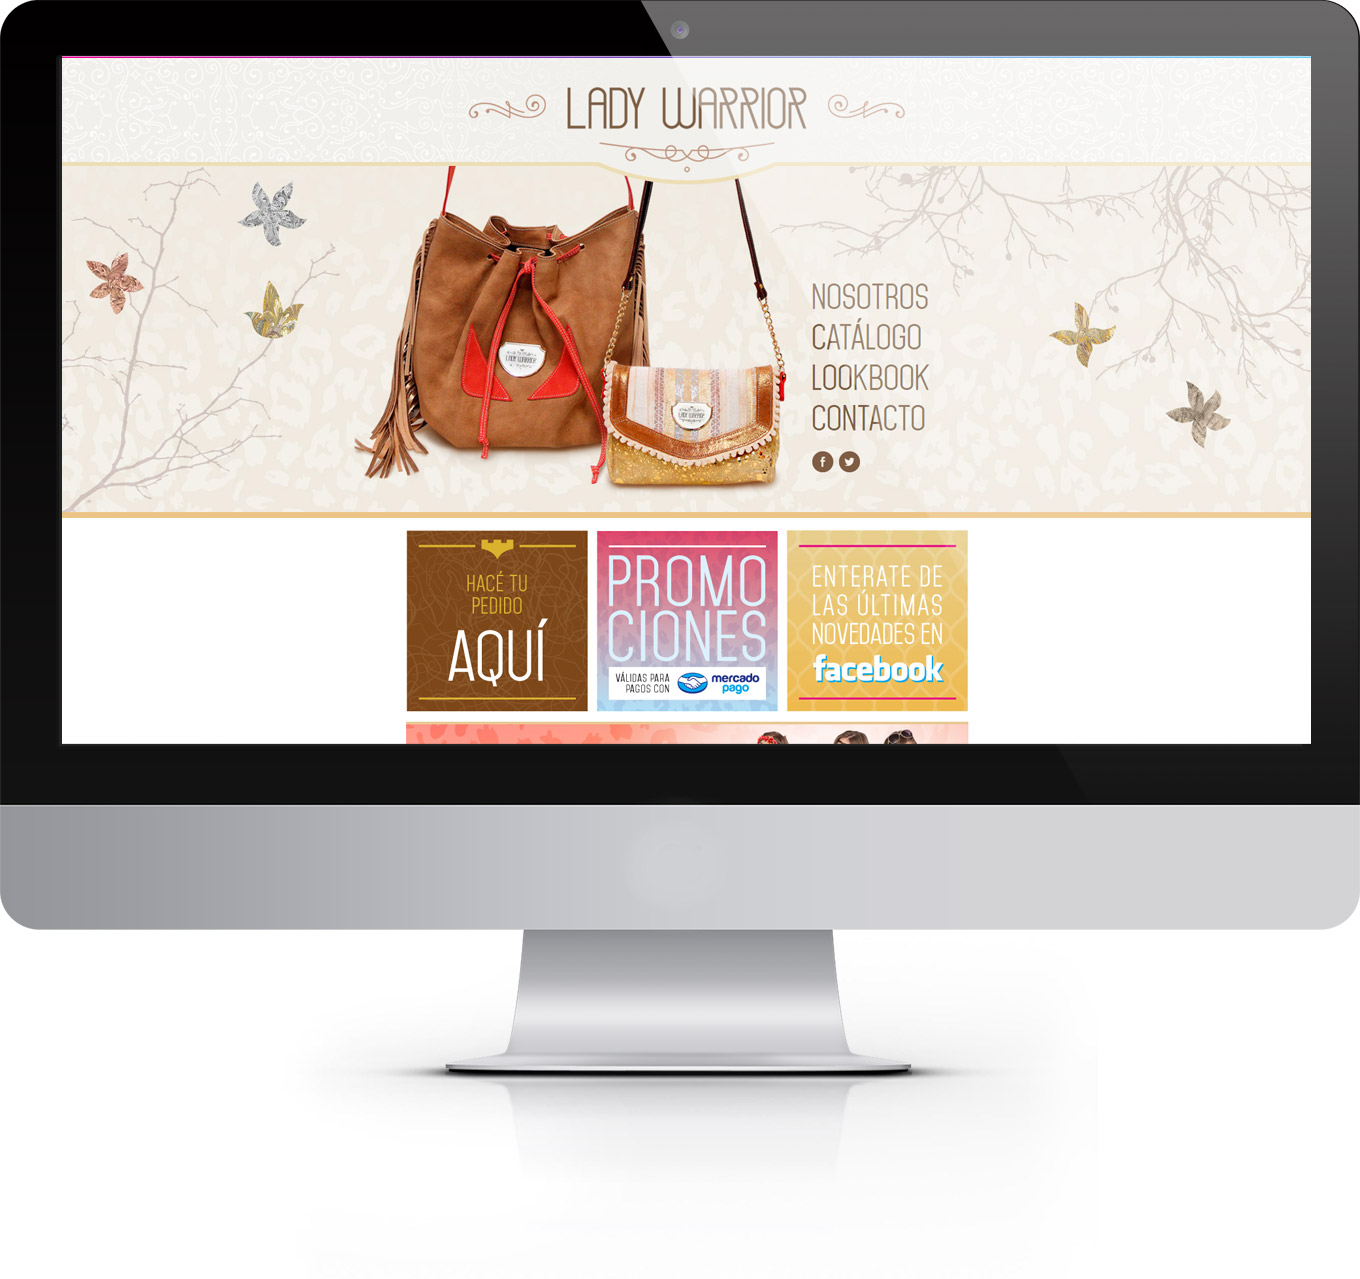 Diseño de página web para Lady Warrior.